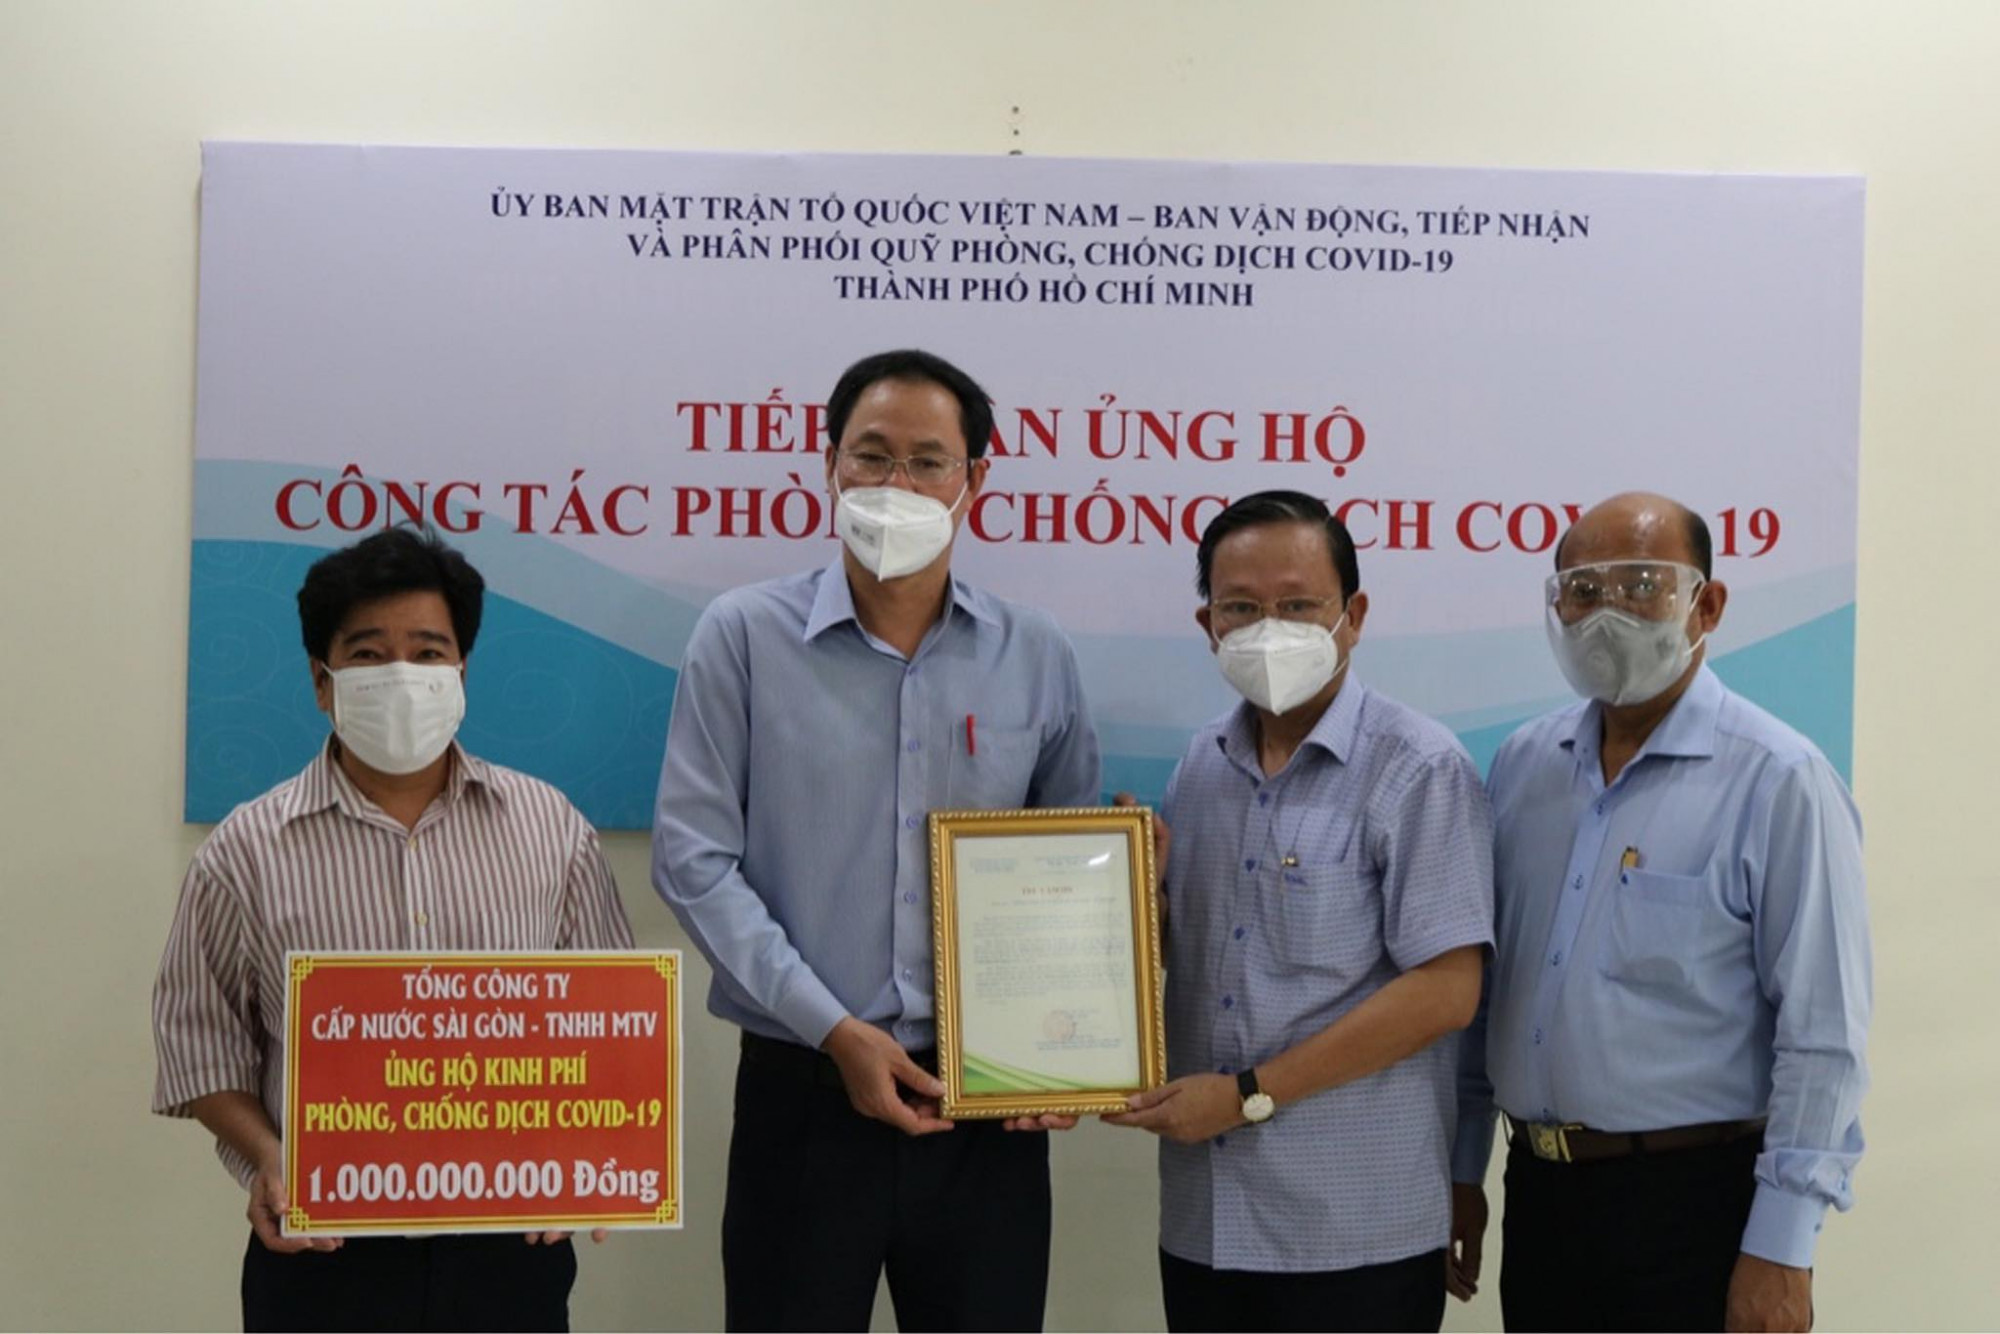 trong năm 2021, SAWACO cũng đã đóng góp ủng hộ Ủy ban Mặt trận Tổ quốc Thành phố Hồ Chí Minh trong công tác phòng chống dịch bệnh với số tiền 1.000.000.000 đồng (một tỷ đồng), Ủng hộ Quỹ “Vì người nghèo” của Thành phố với số tiền 331.000.000 đồng.